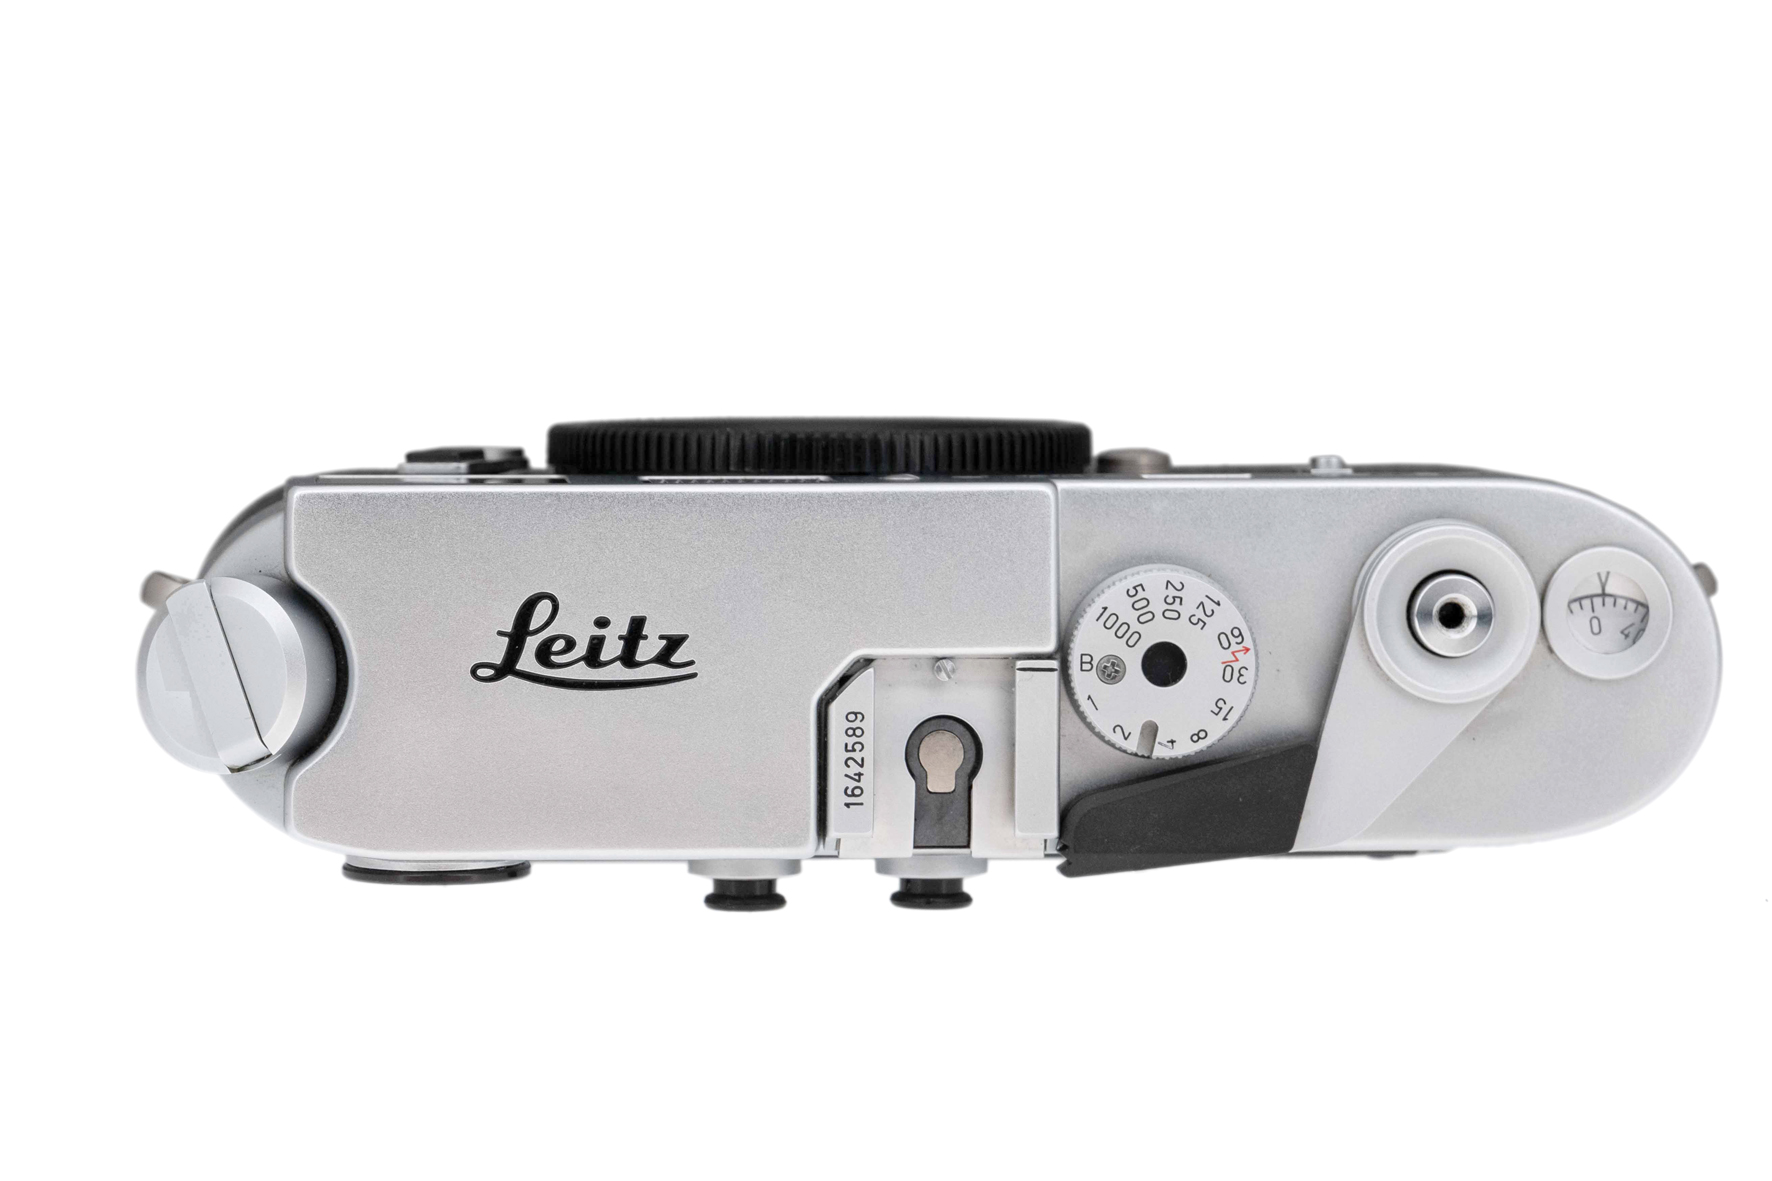  Leica M4-P silver